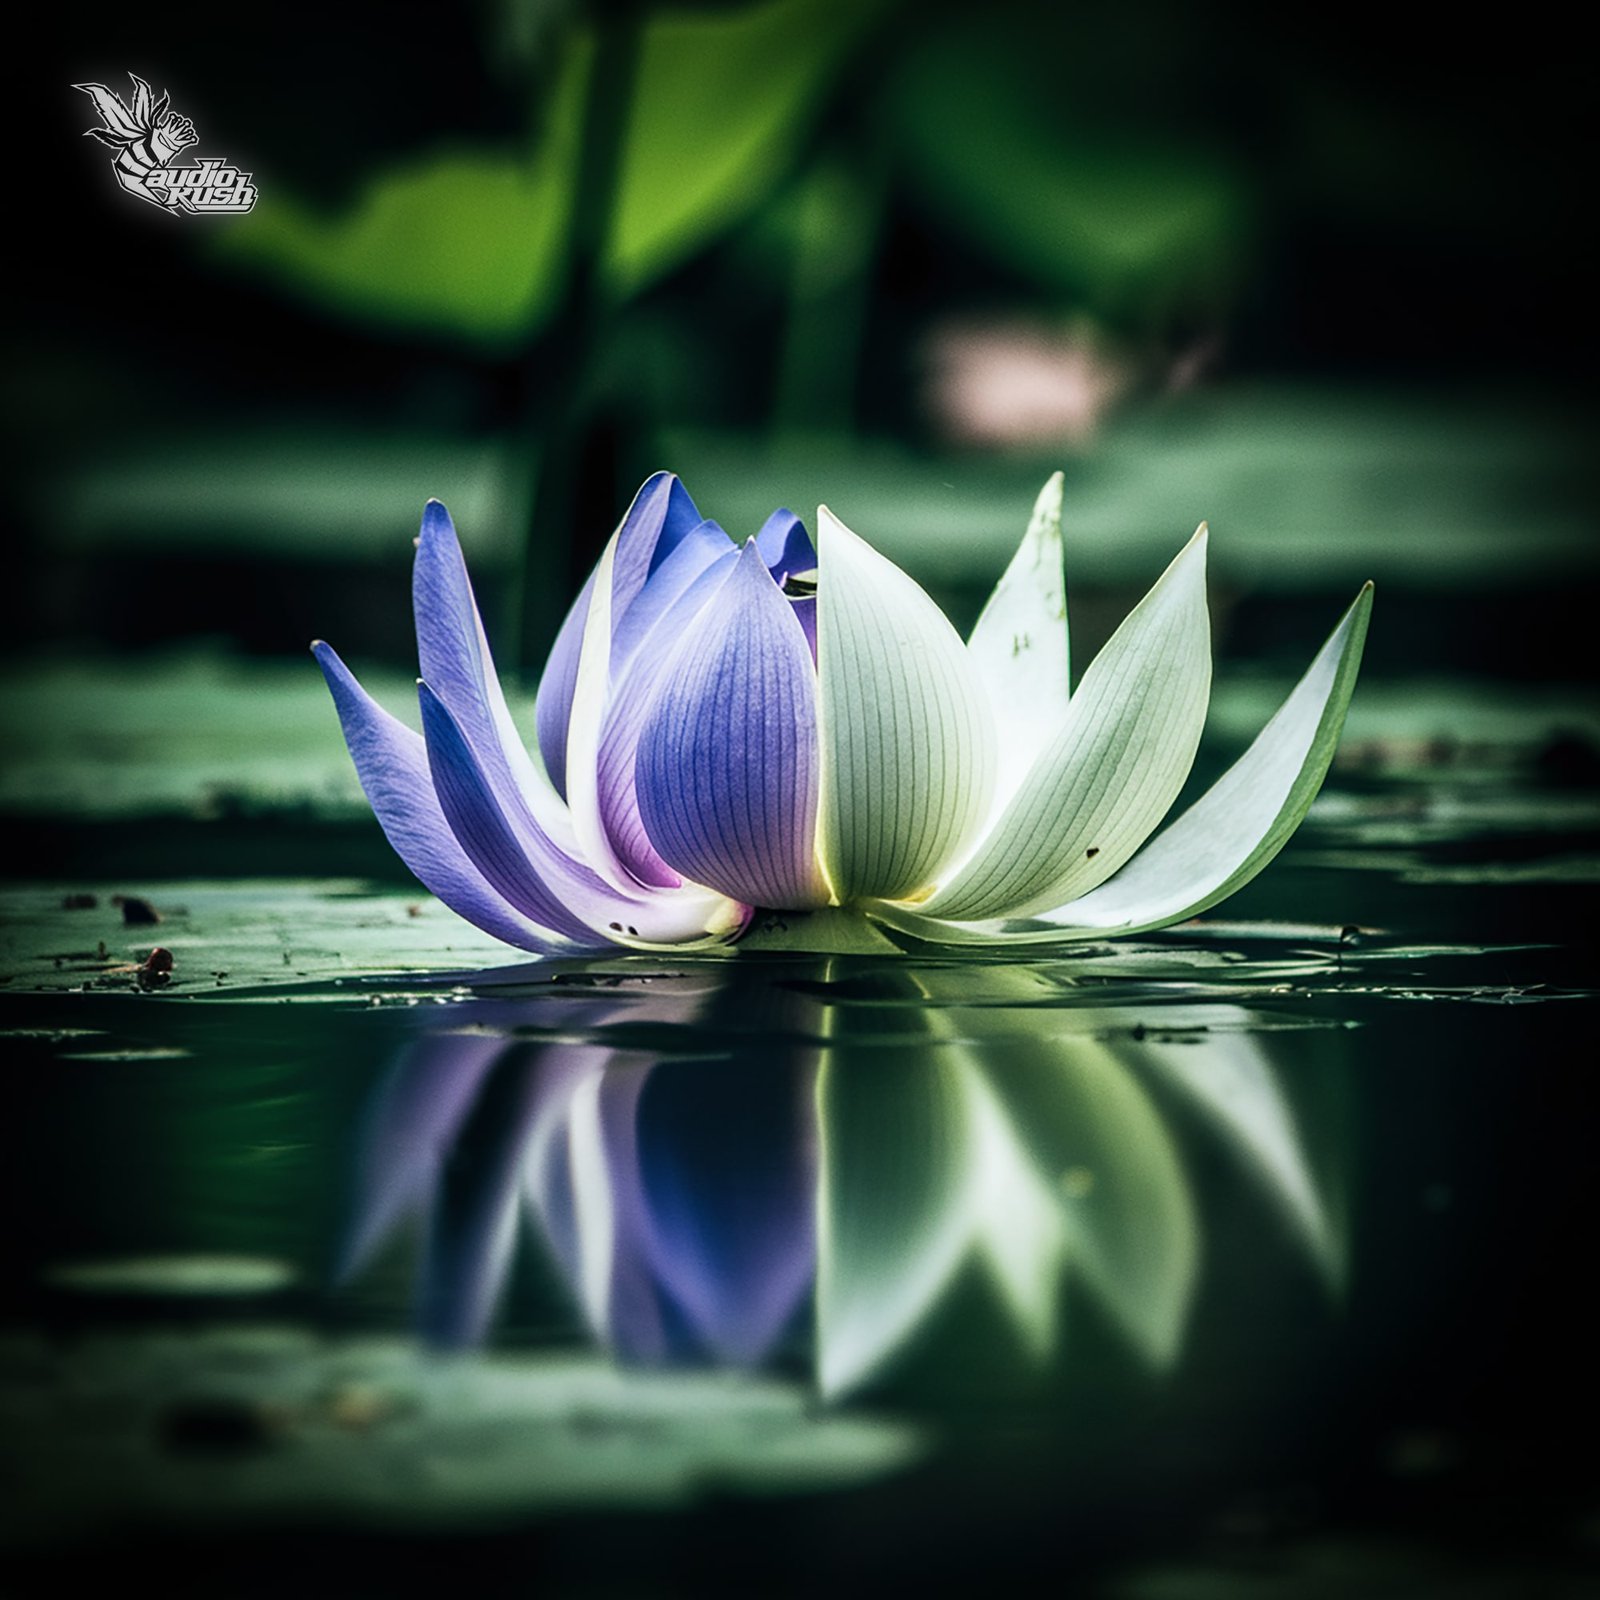 exploring blue lotus & white lotus